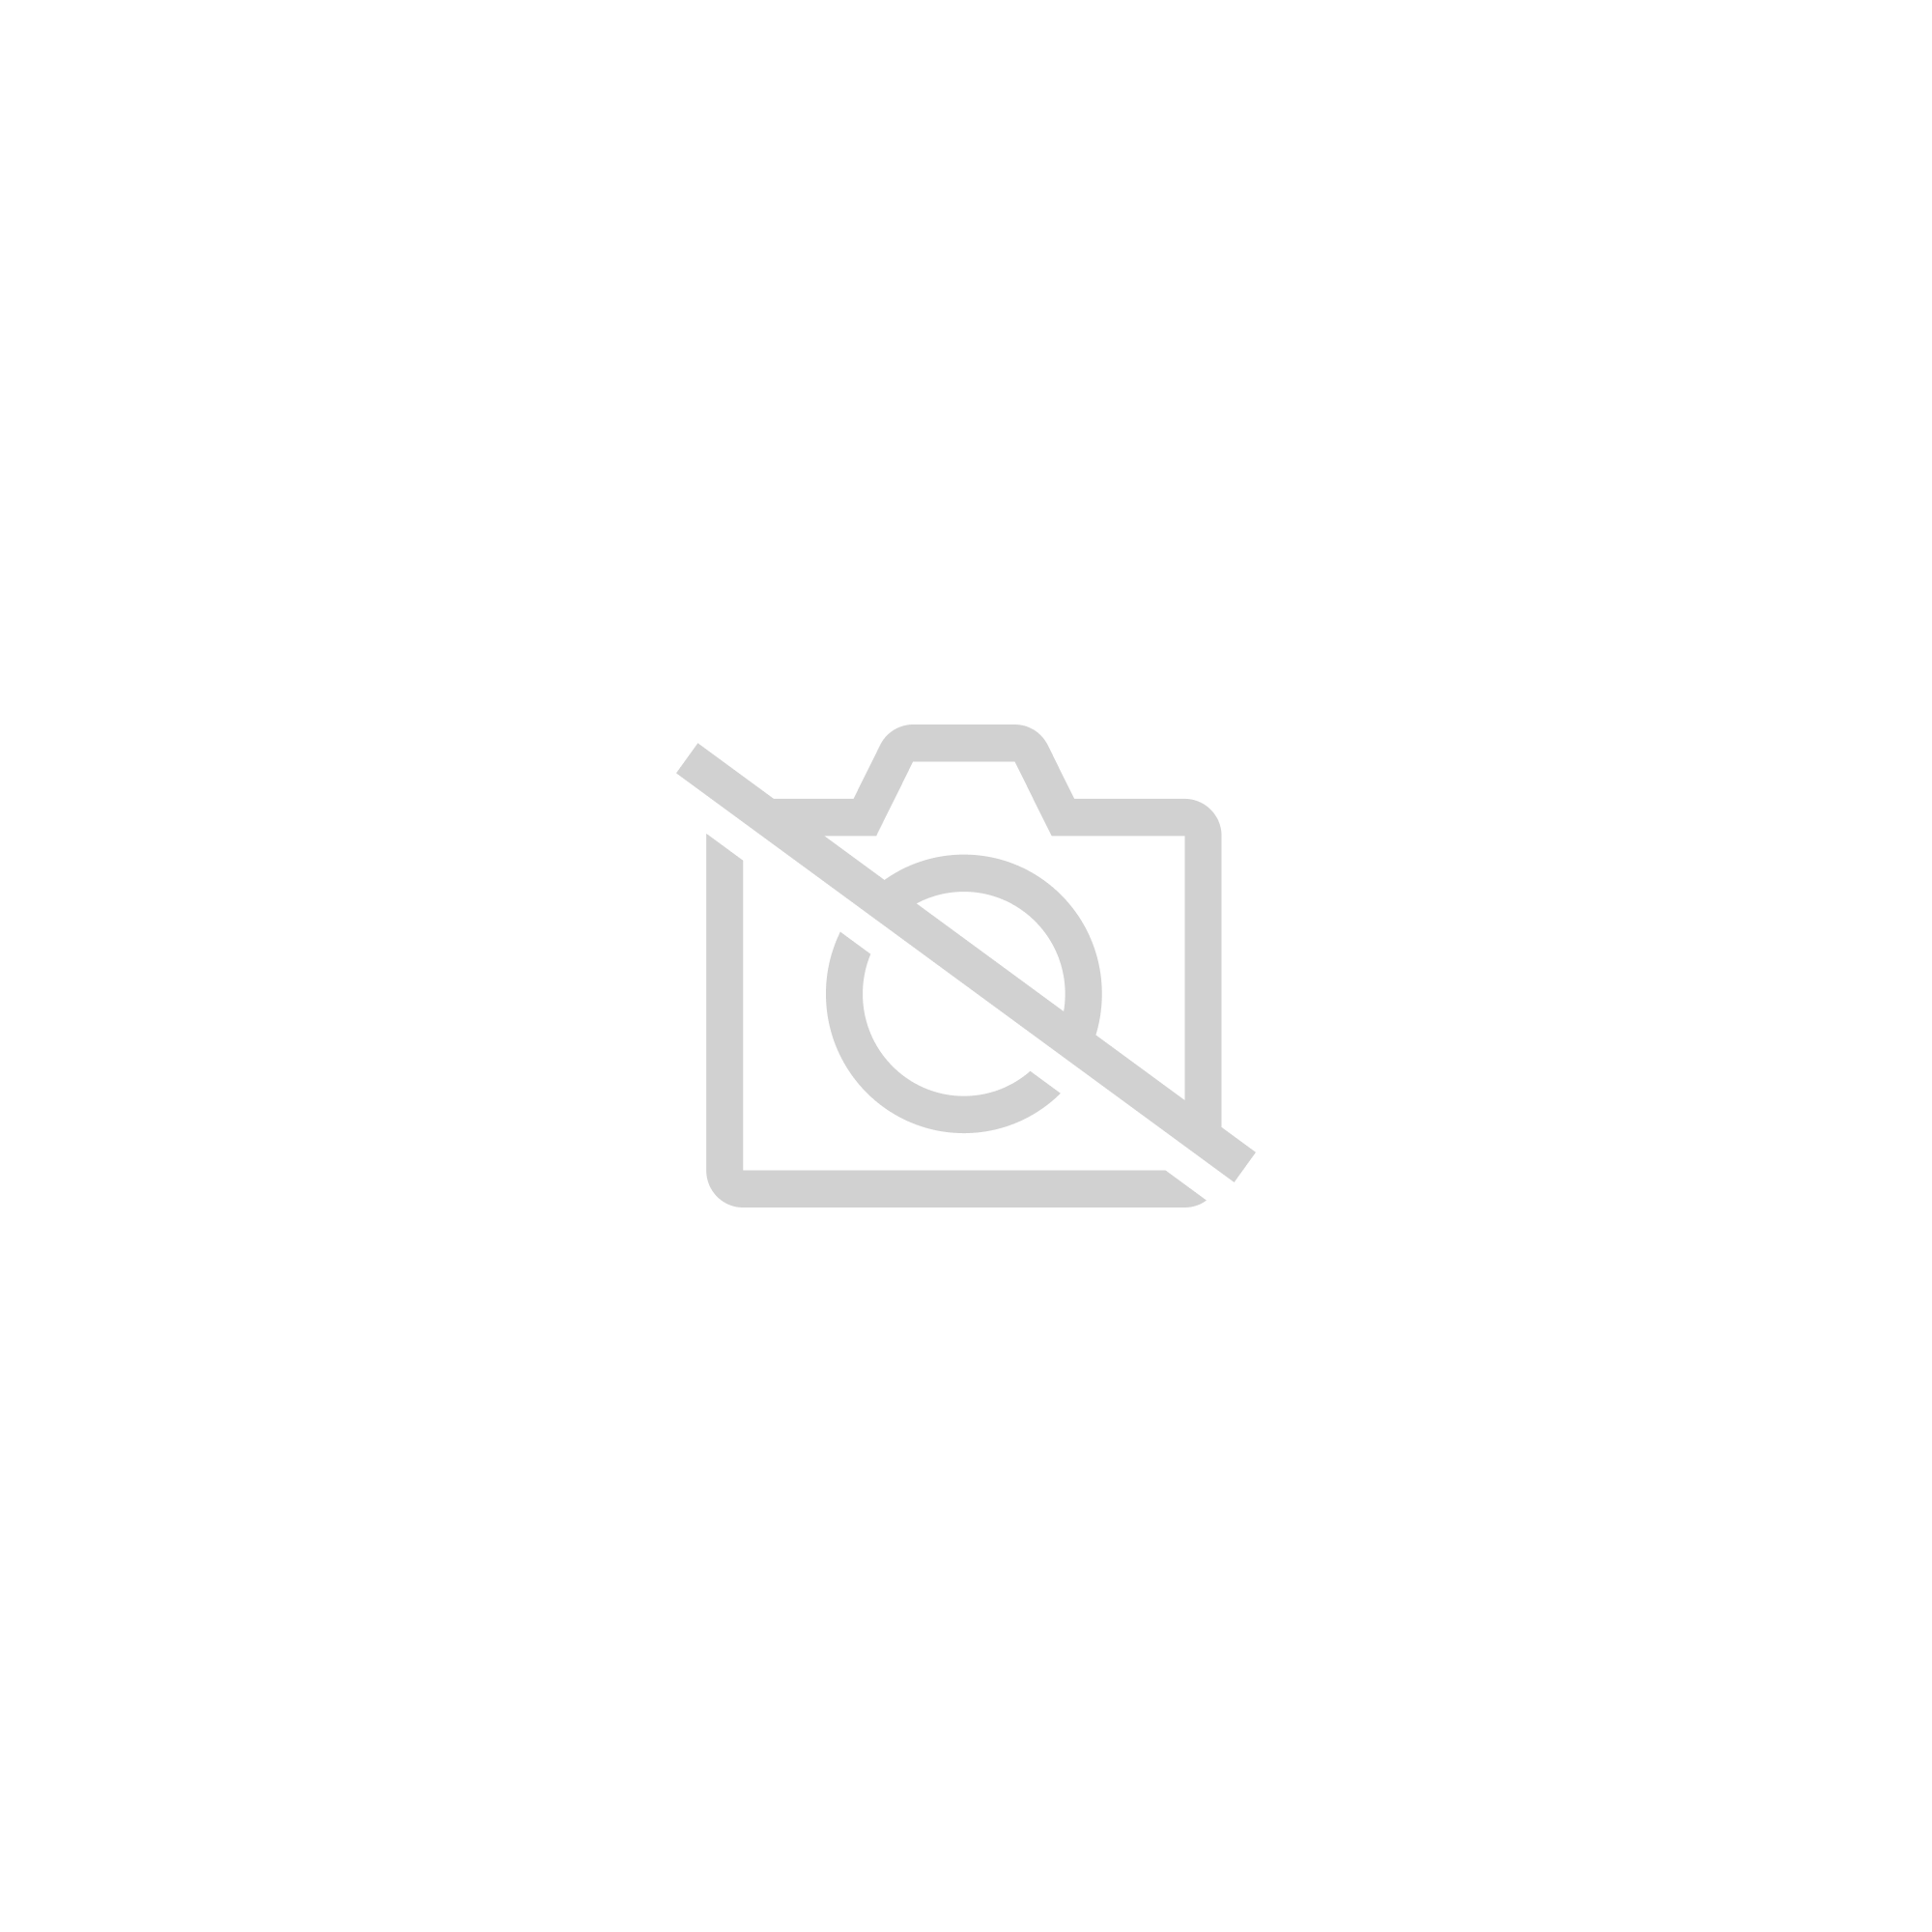 Tapis de souris Fairy Tail 3d, accessoire ergonomique pour ordinateur de bureau gamer, 700x300x3mm, parfait comme cadeau d'halloween - mousepad 12|Size 800x400x4mm - SBD0328B07143